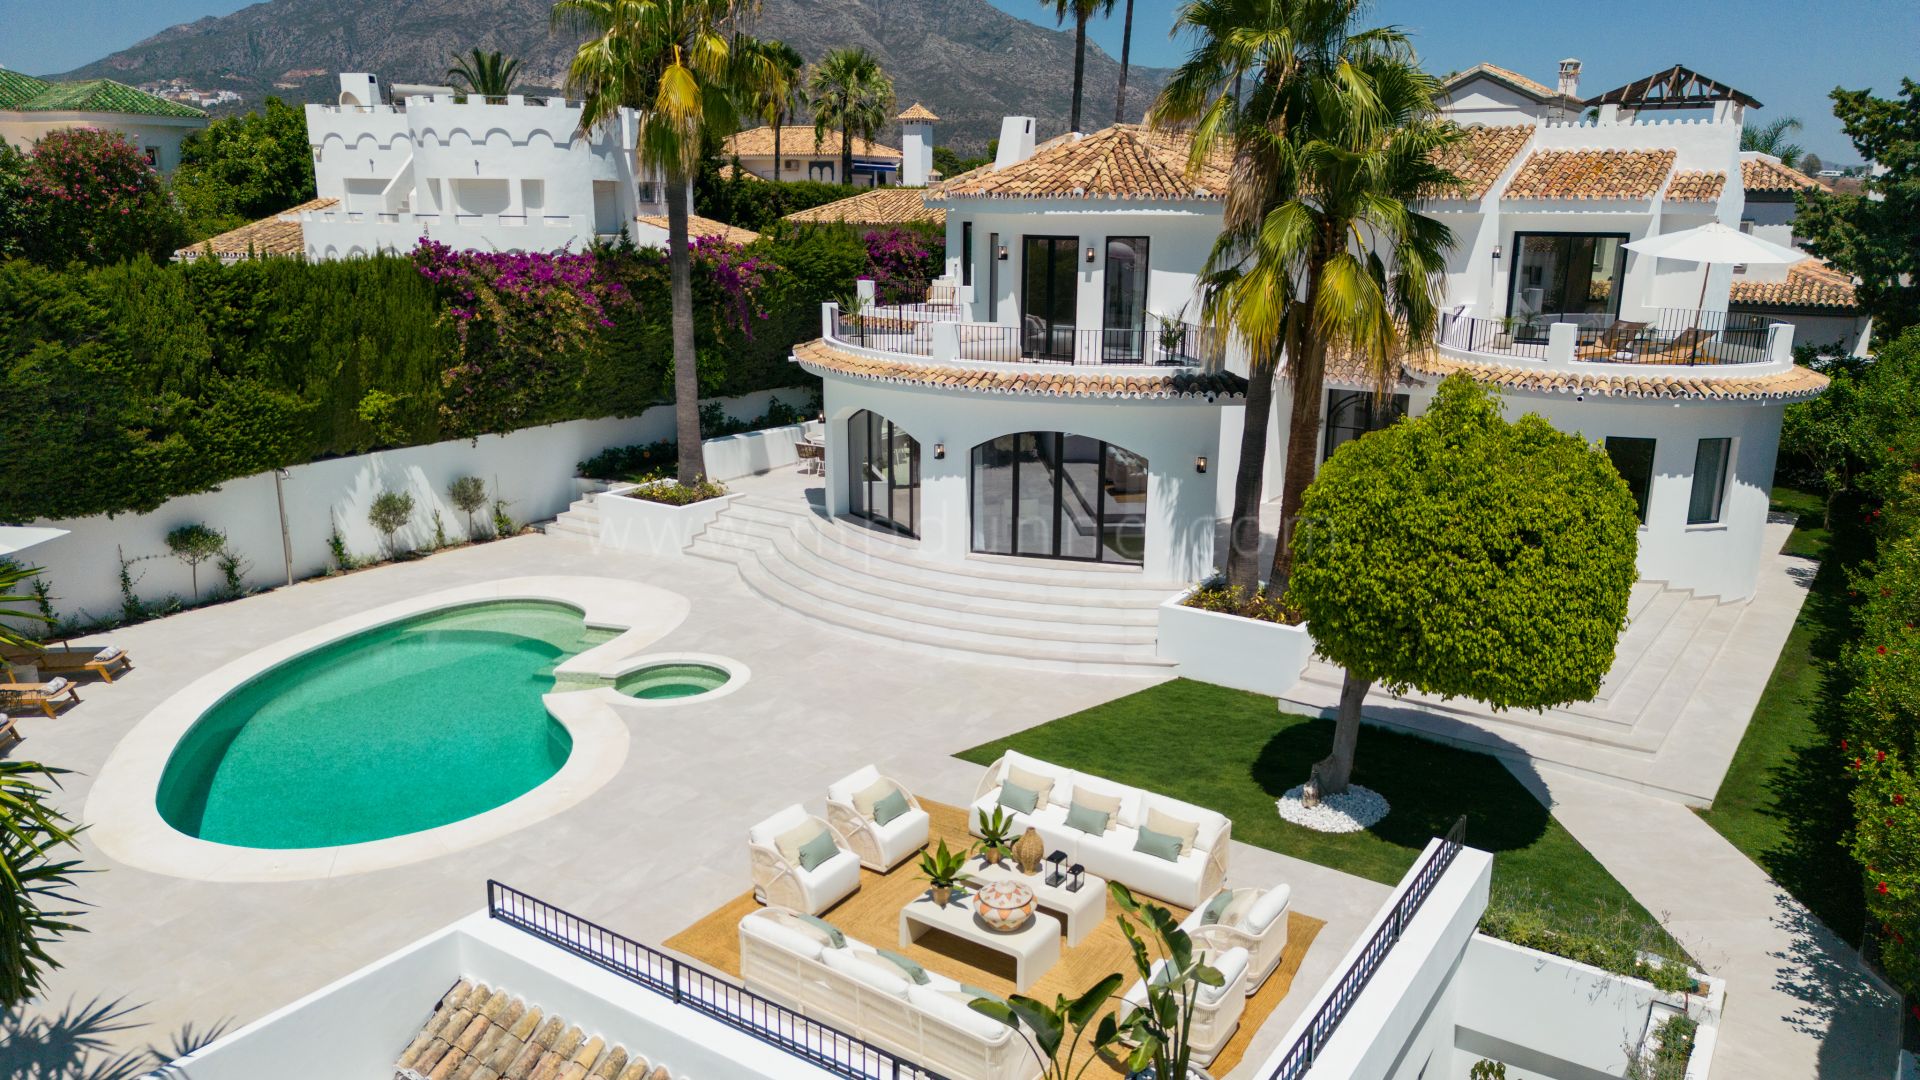 Villa de estilo mediterráneo con vistas panorámicas en el Valle del Golf